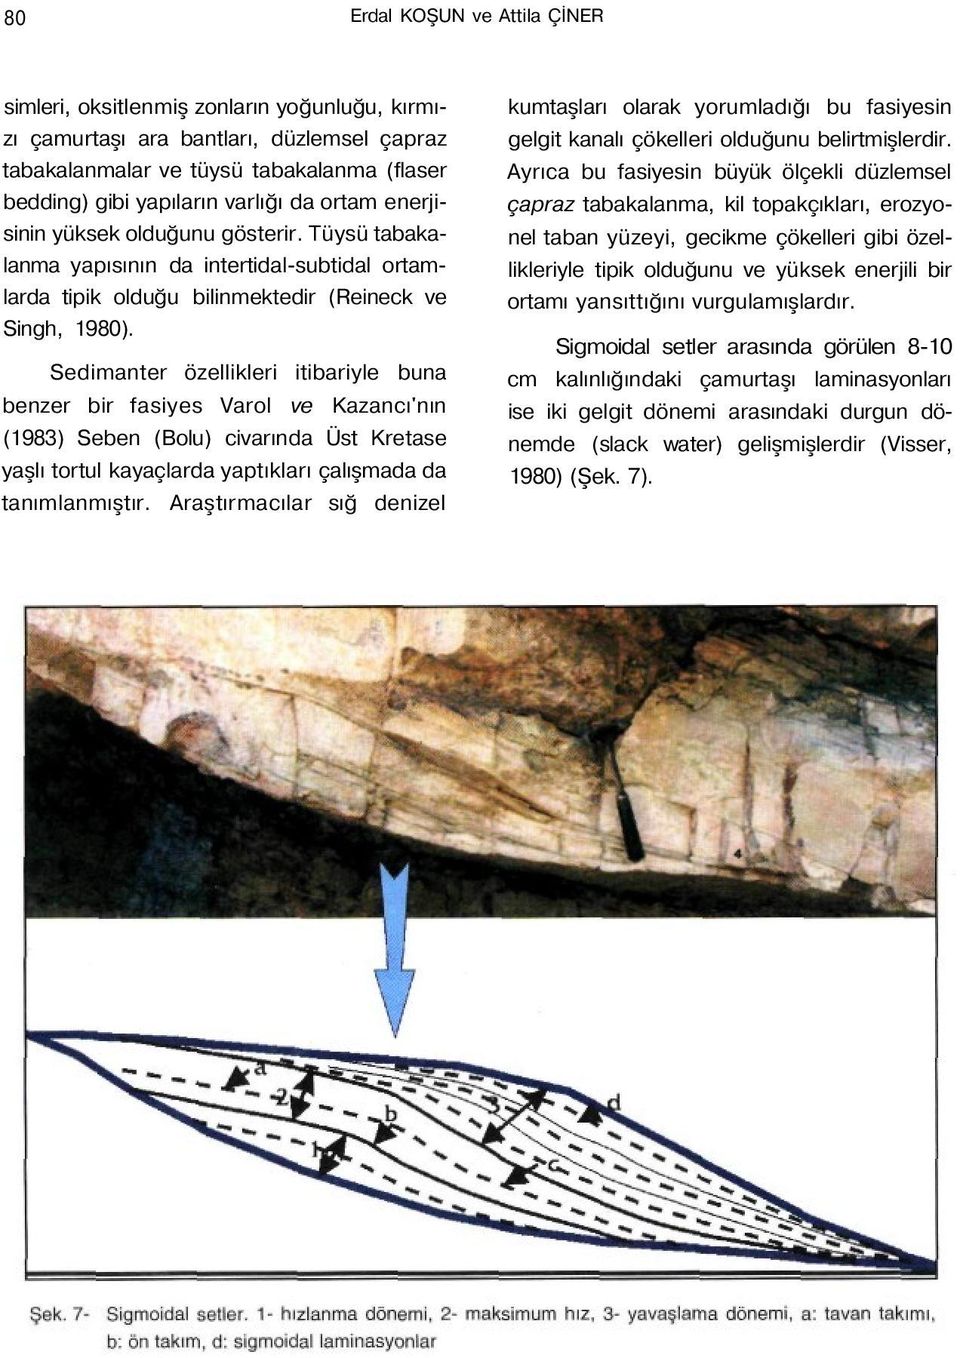 Sedimanter özellikleri itibariyle buna benzer bir fasiyes Varol ve Kazancı'nın (1983) Seben (Bolu) civarında Üst Kretase yaşlı tortul kayaçlarda yaptıkları çalışmada da tanımlanmıştır.